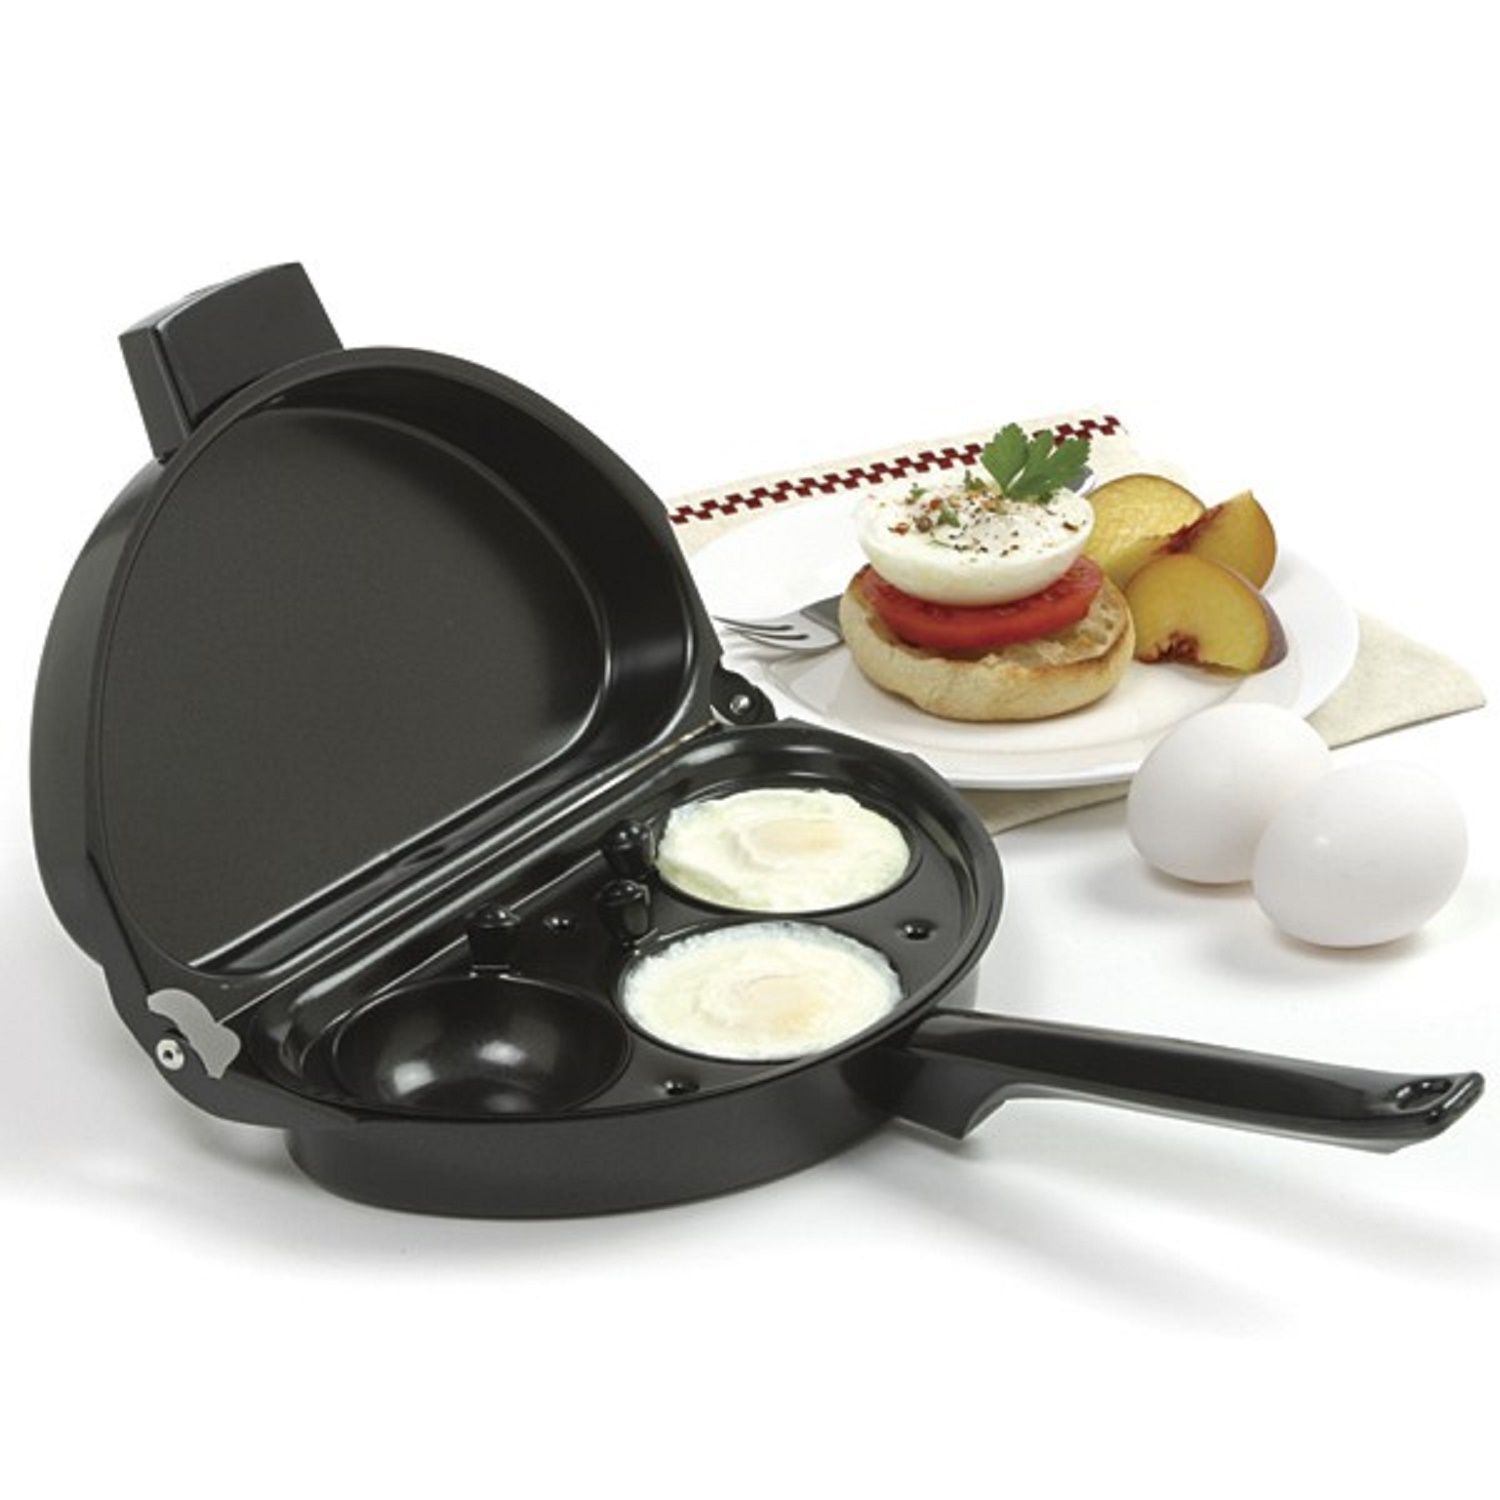 Buy Omelette Pan with 3Egg Poacher Online PurpleSpoilz